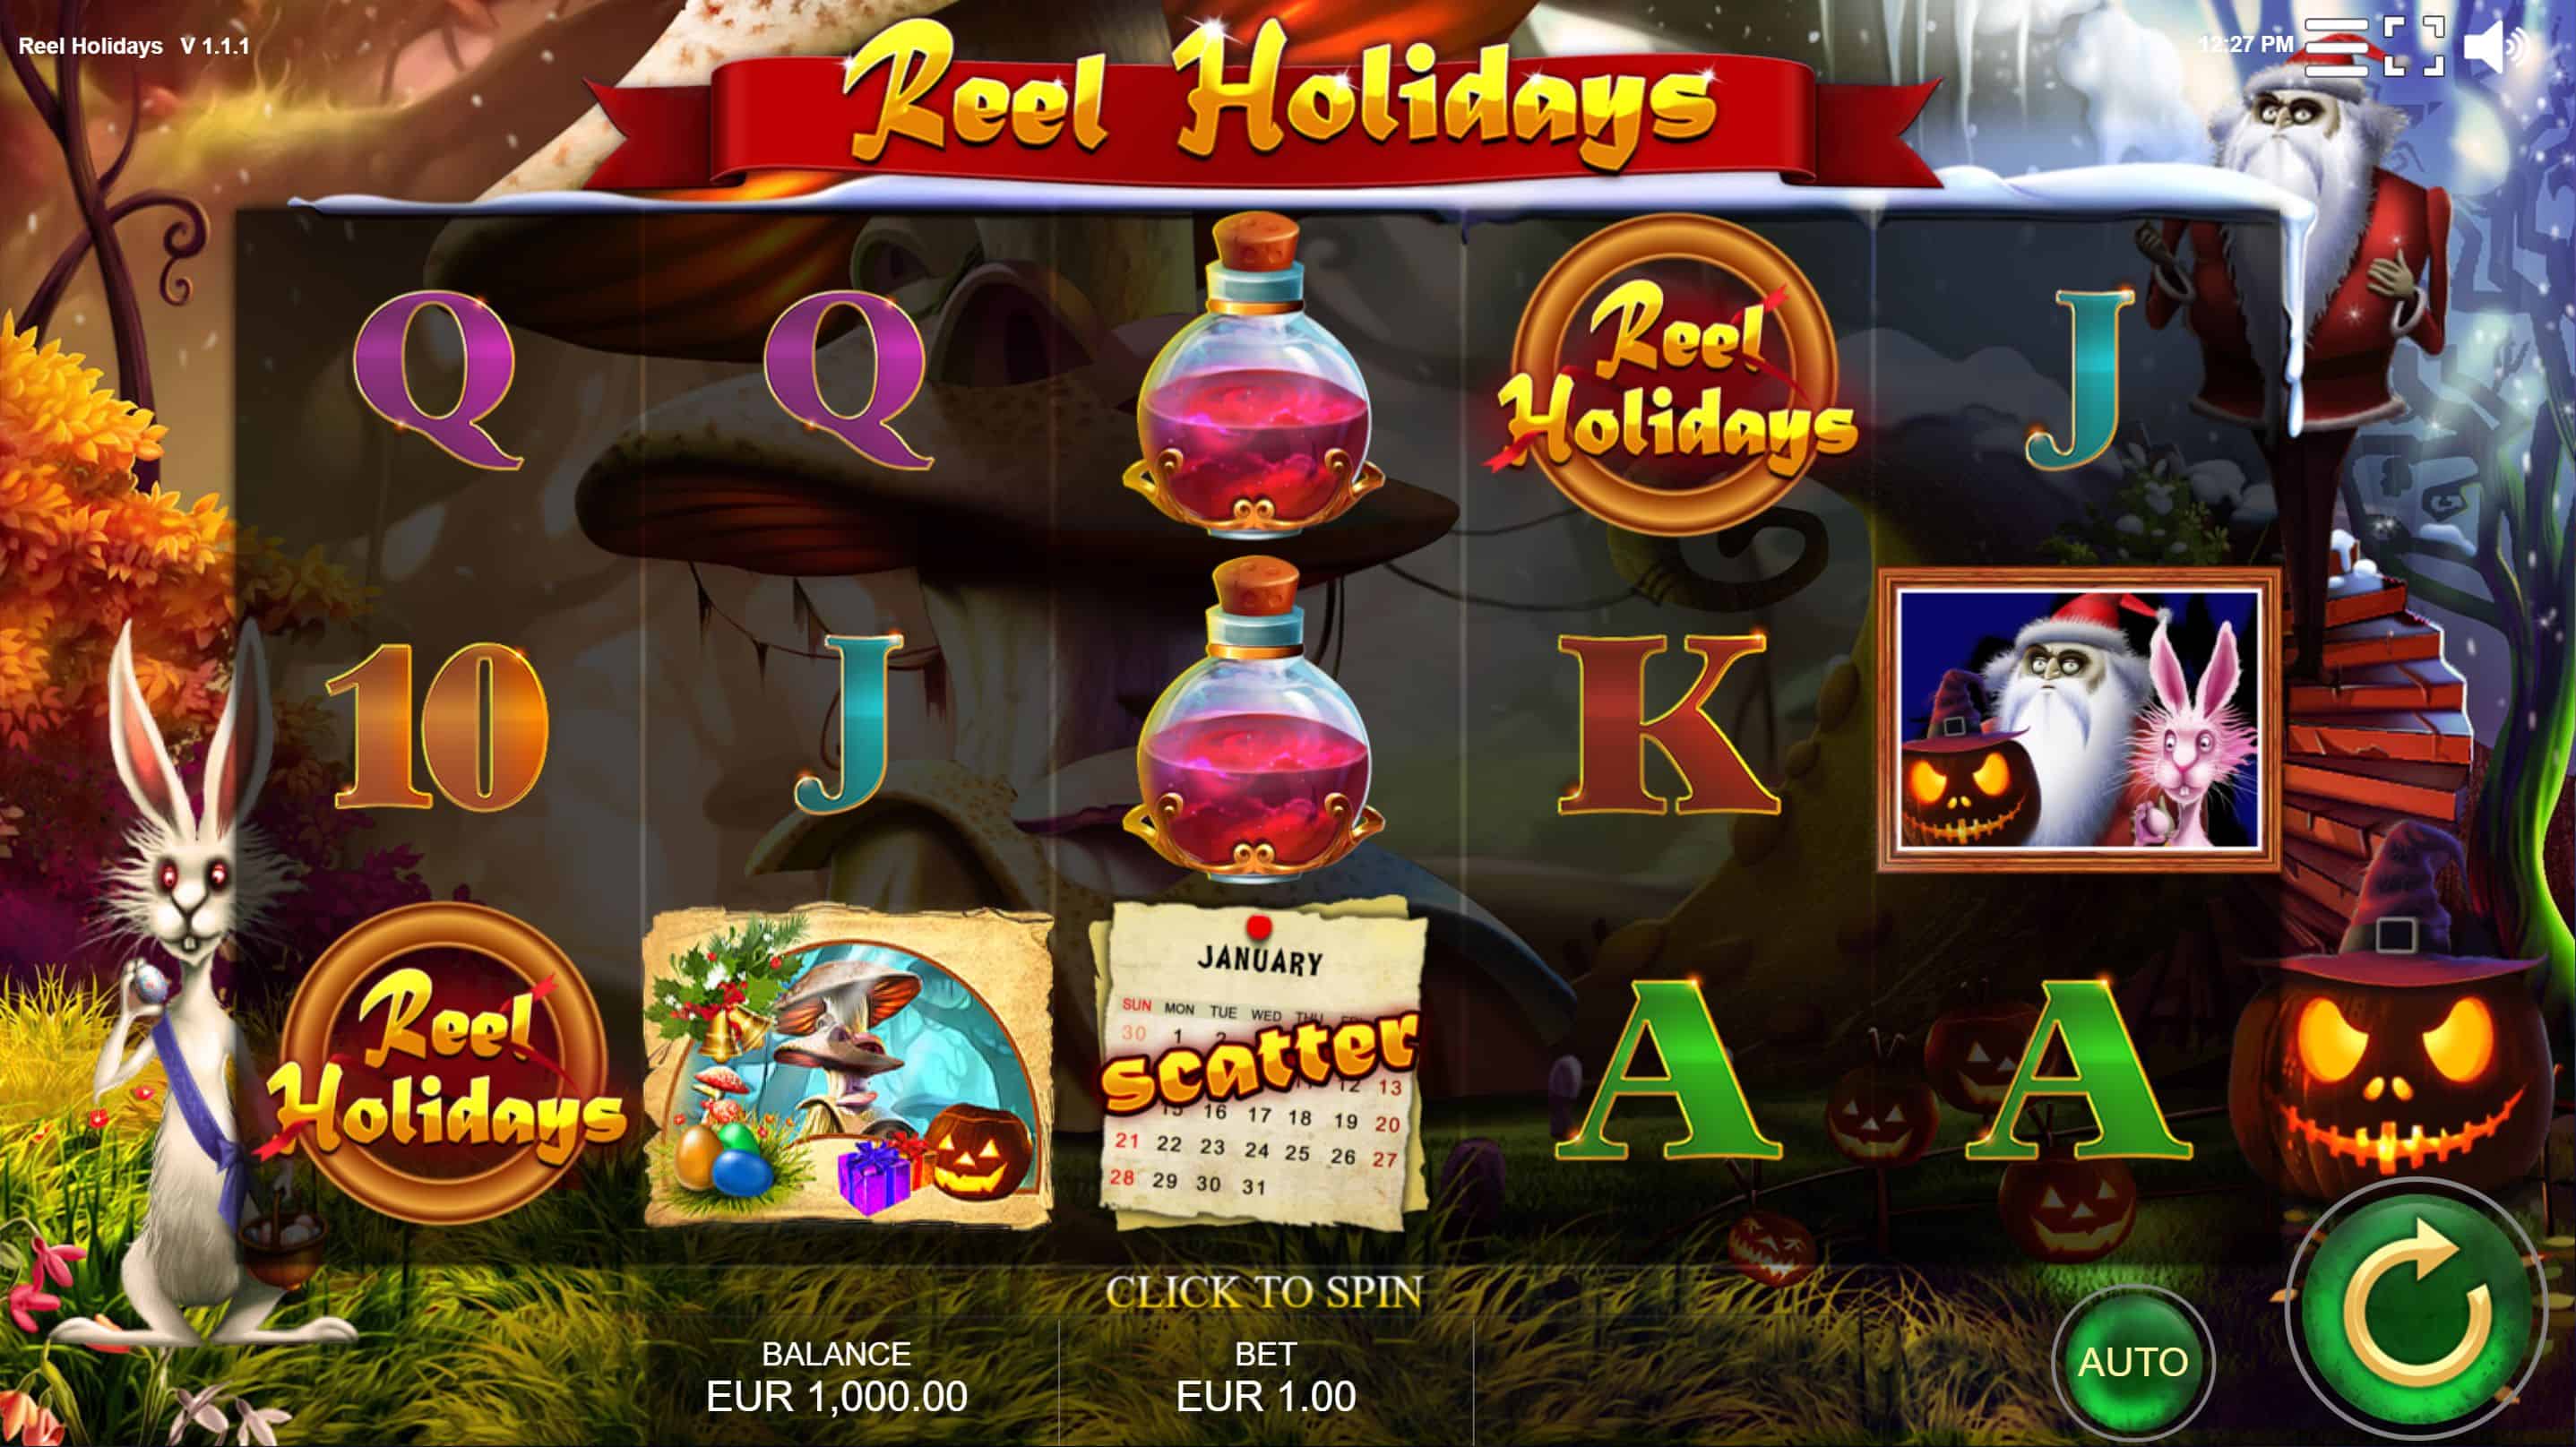 Reel Holidays Slot Game Free Play at Casino Ireland 01